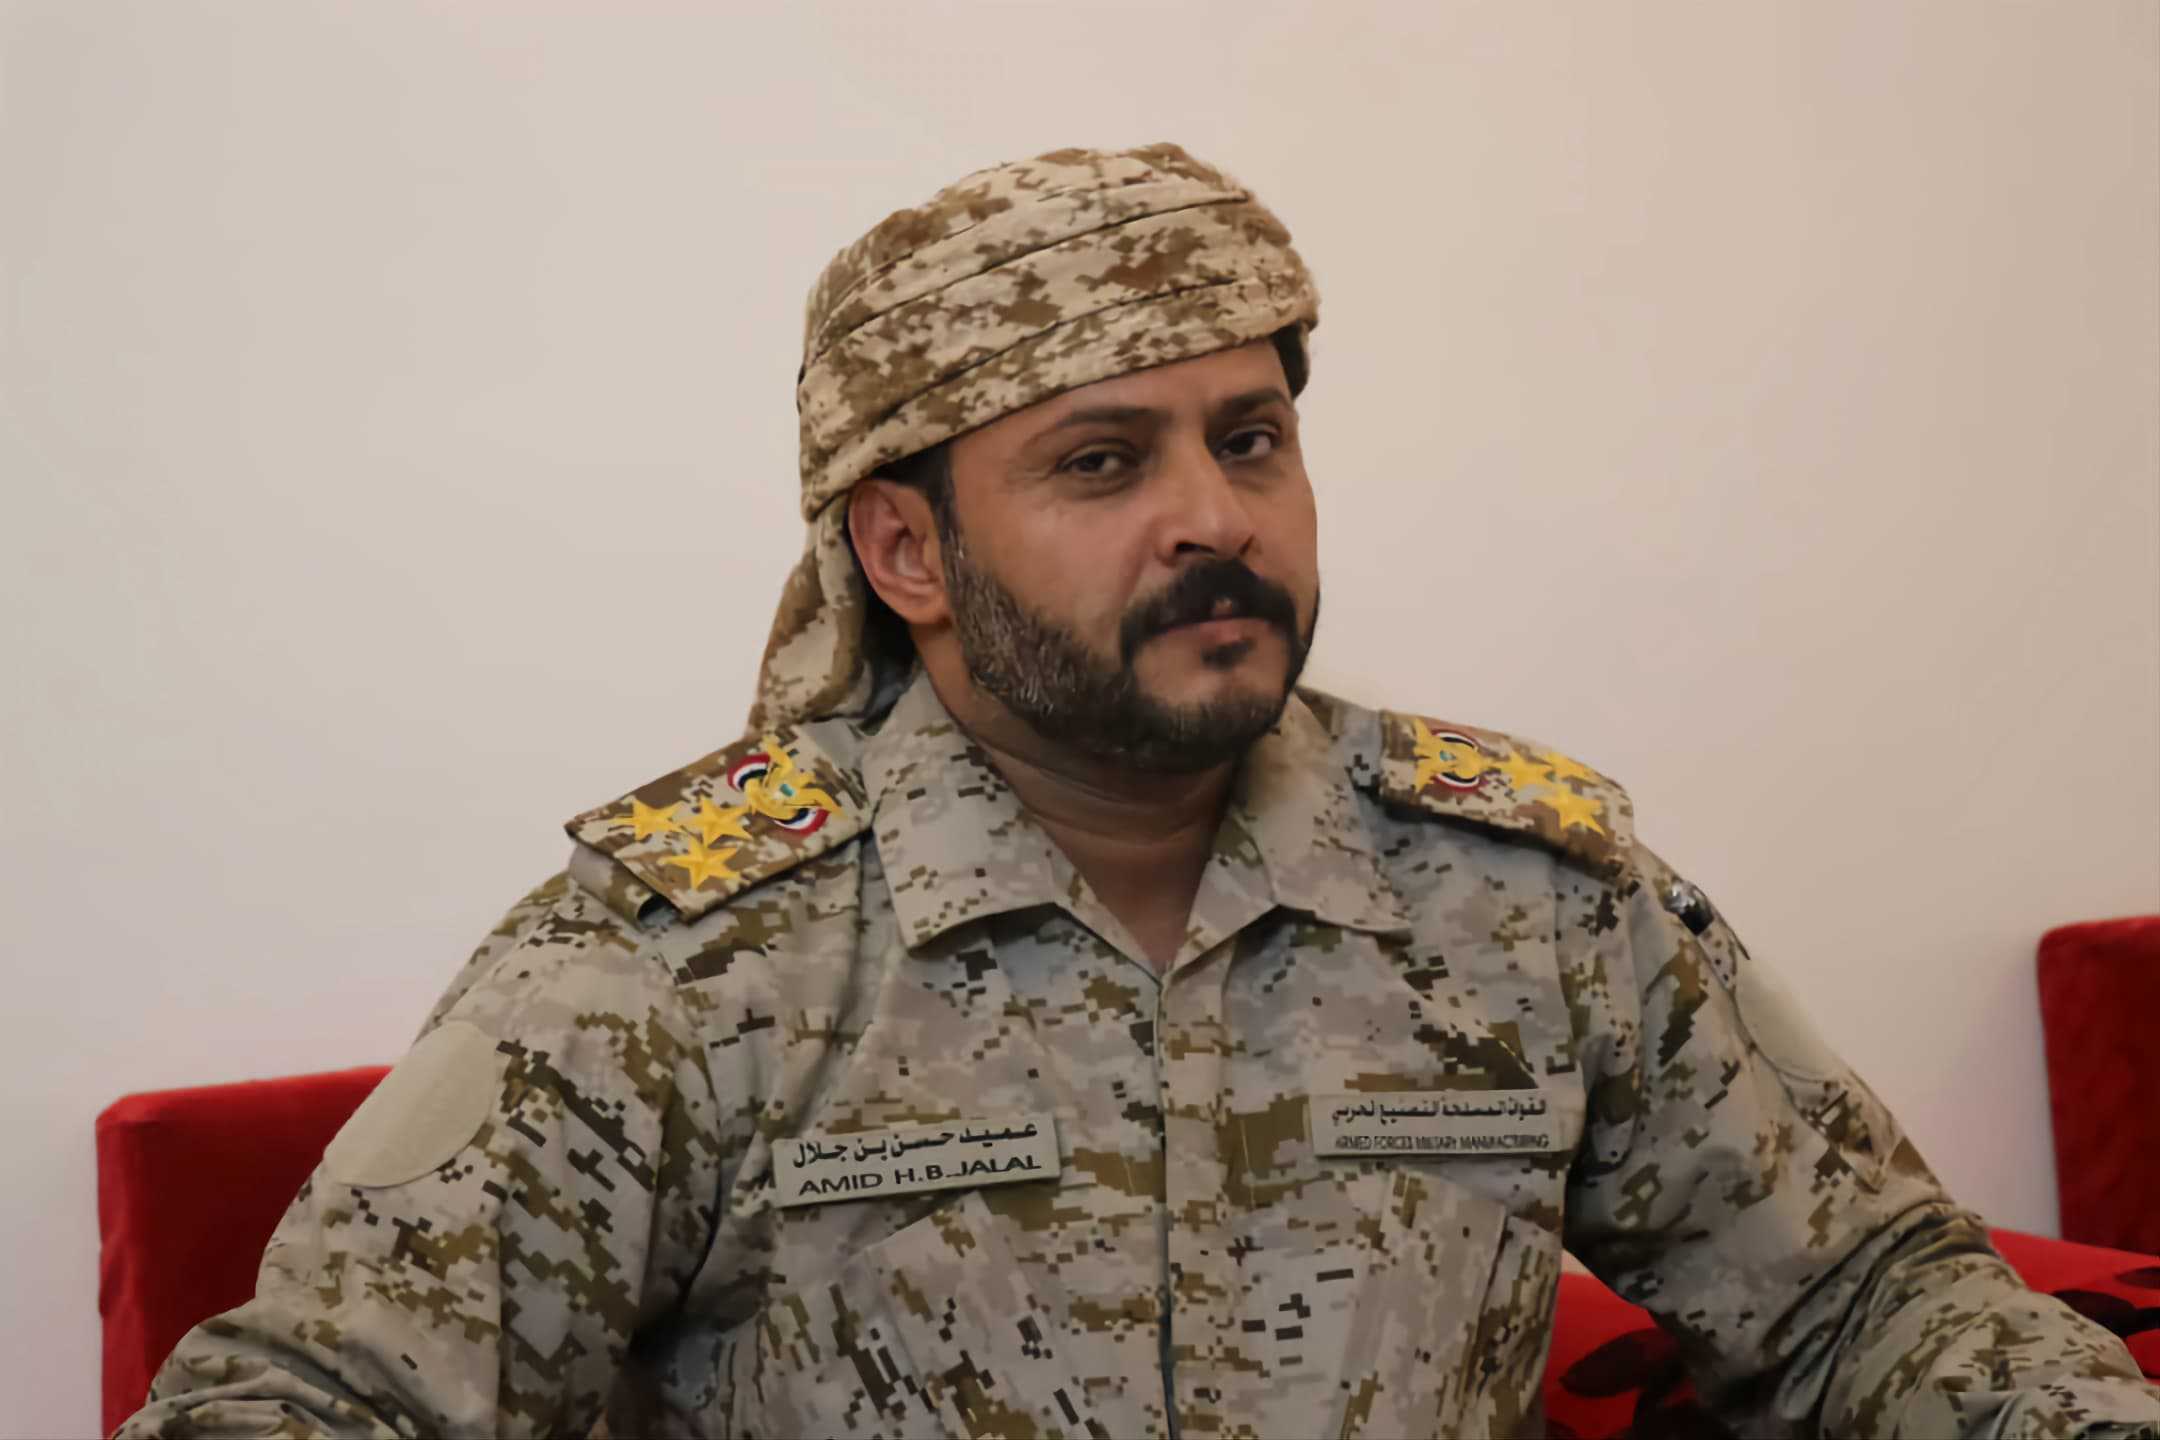 السفارة اليمنية في القاهرة: مقتل اللواء بن جلال حادث جنائي بهدف السرقة